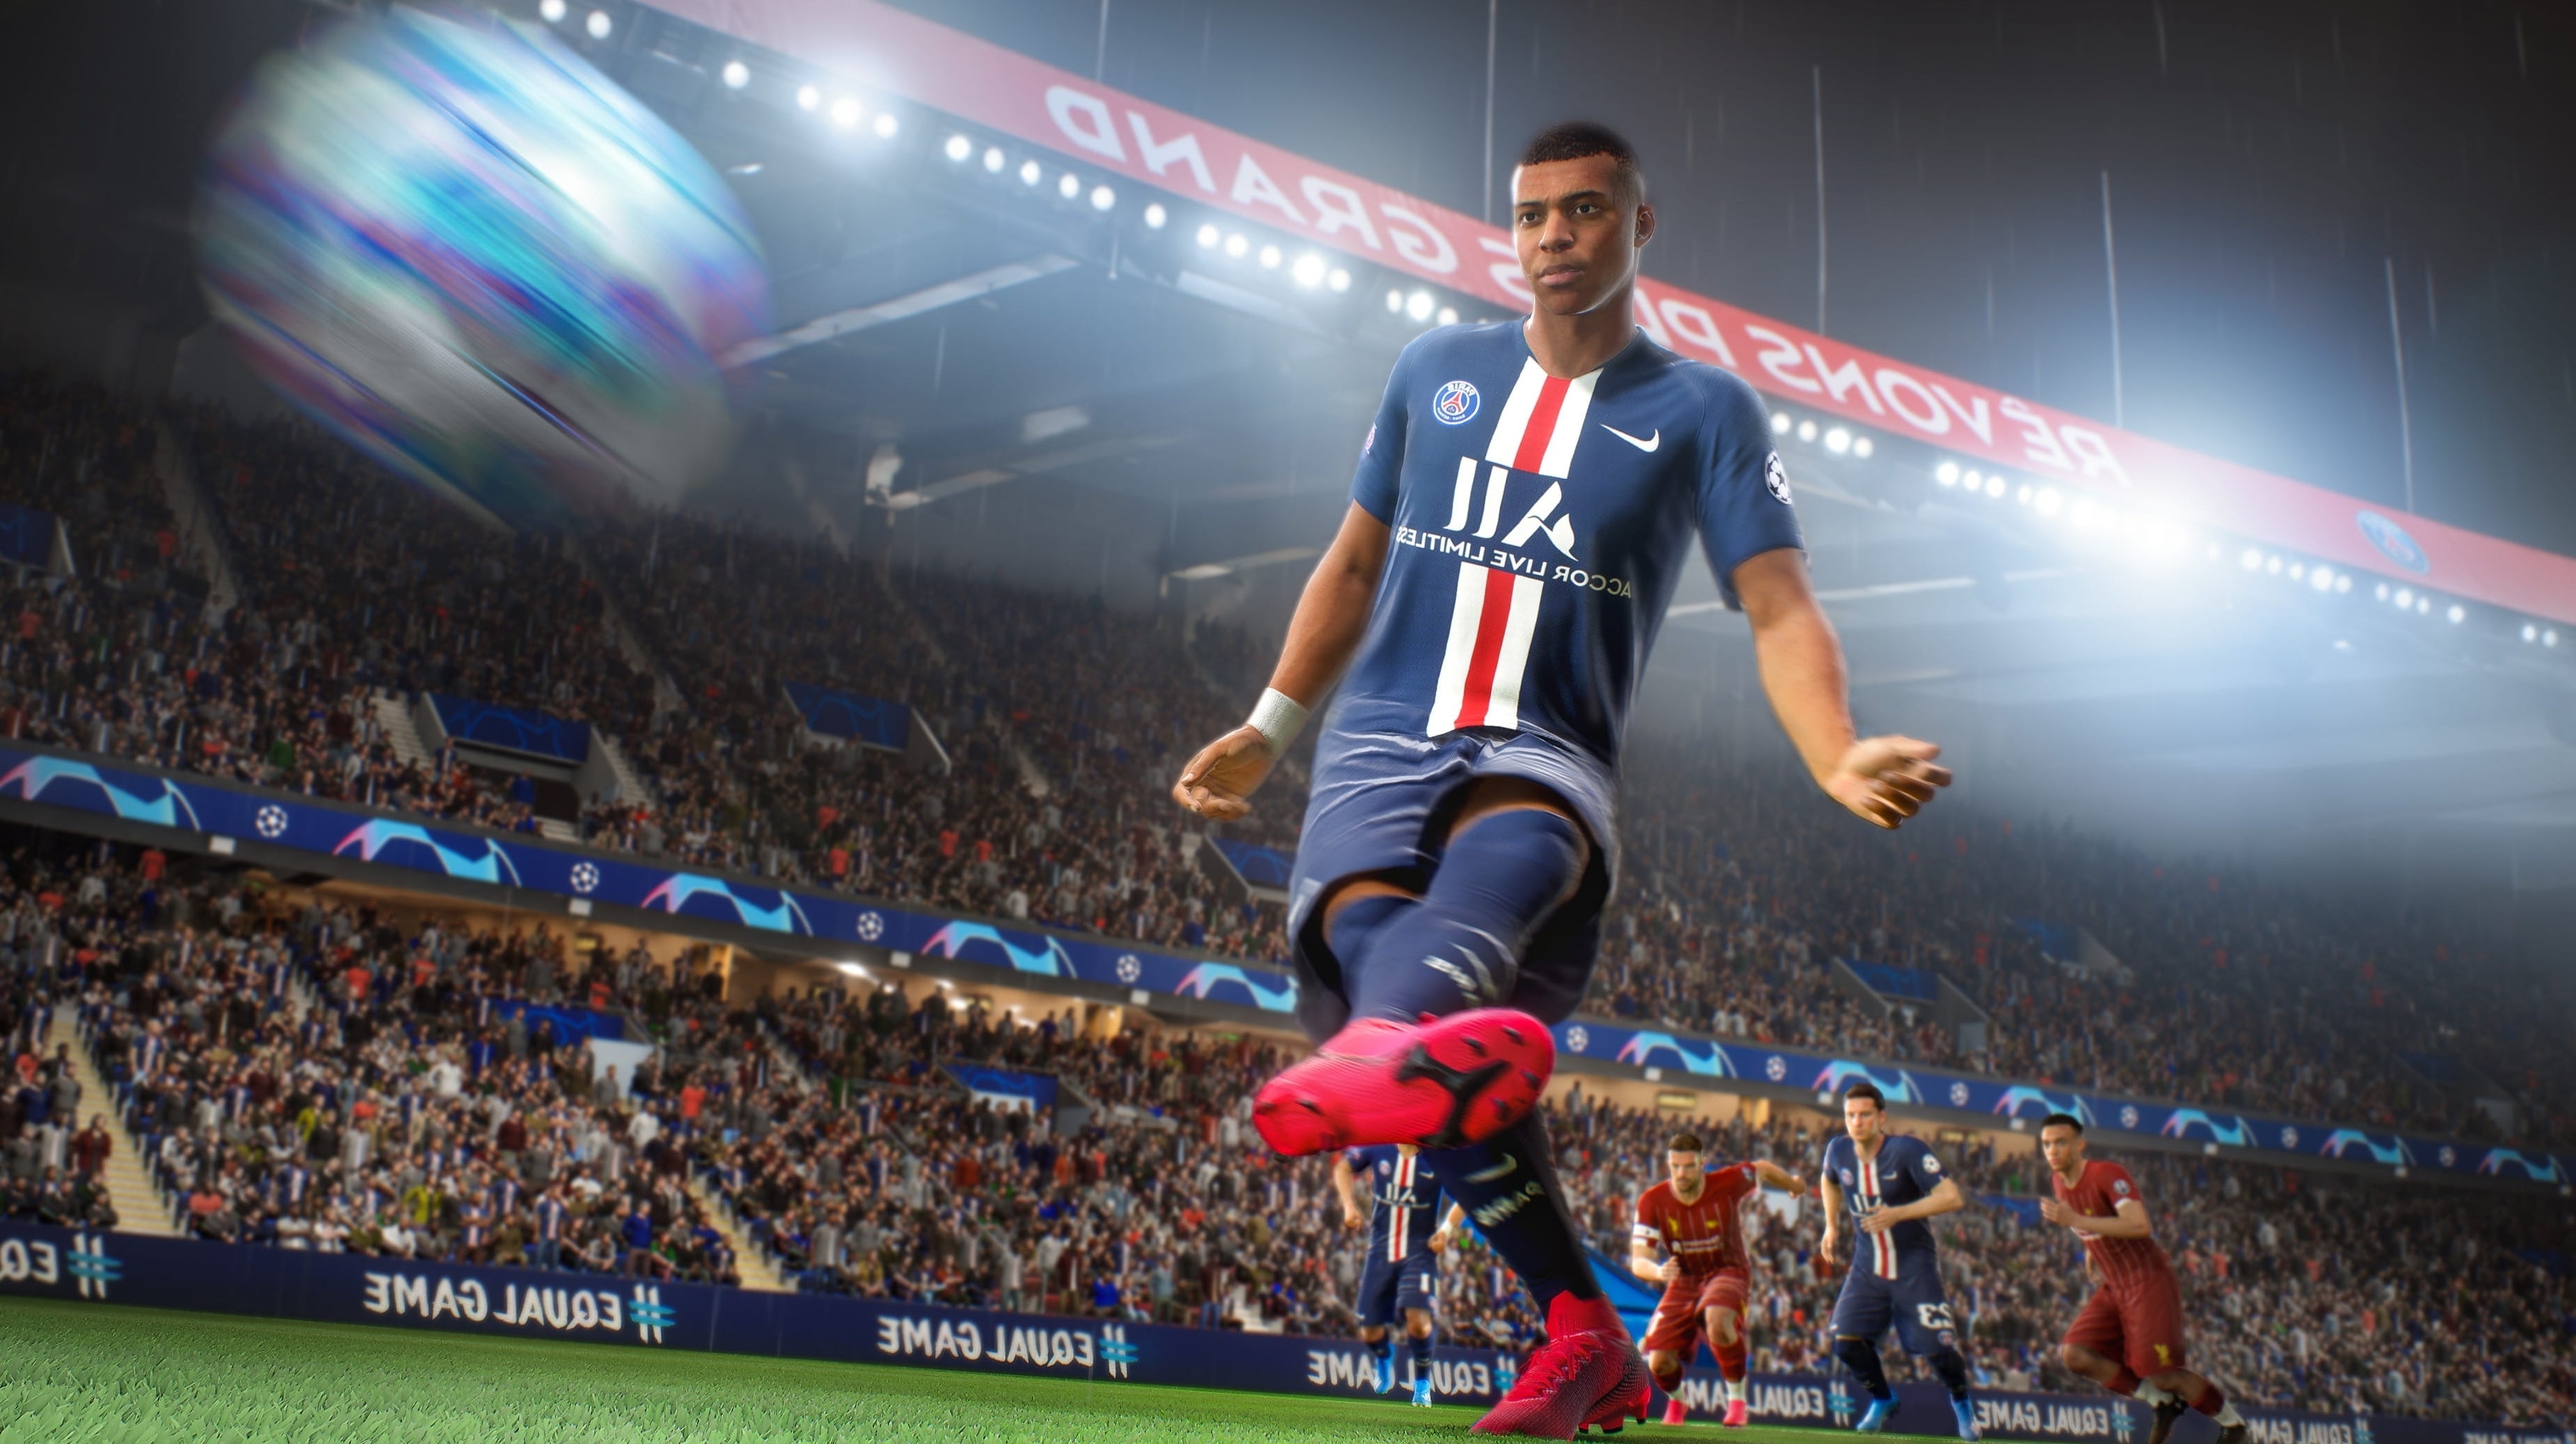 Afbeeldingen van FIFA 21 gids en tips voor beginners en gevorderden